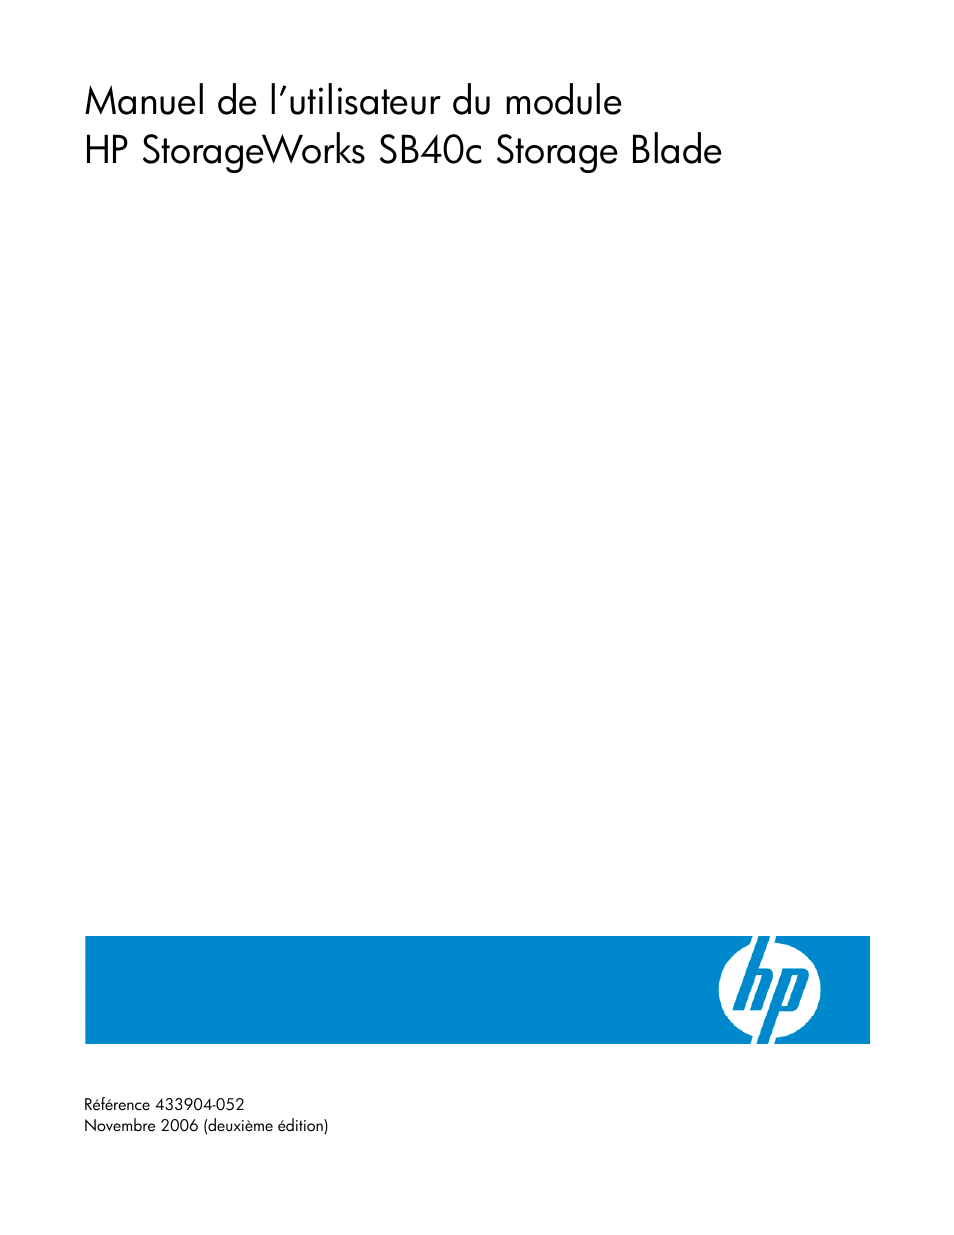 HP Lame de stockage HP SB40c Manuel d'utilisation | Pages: 37